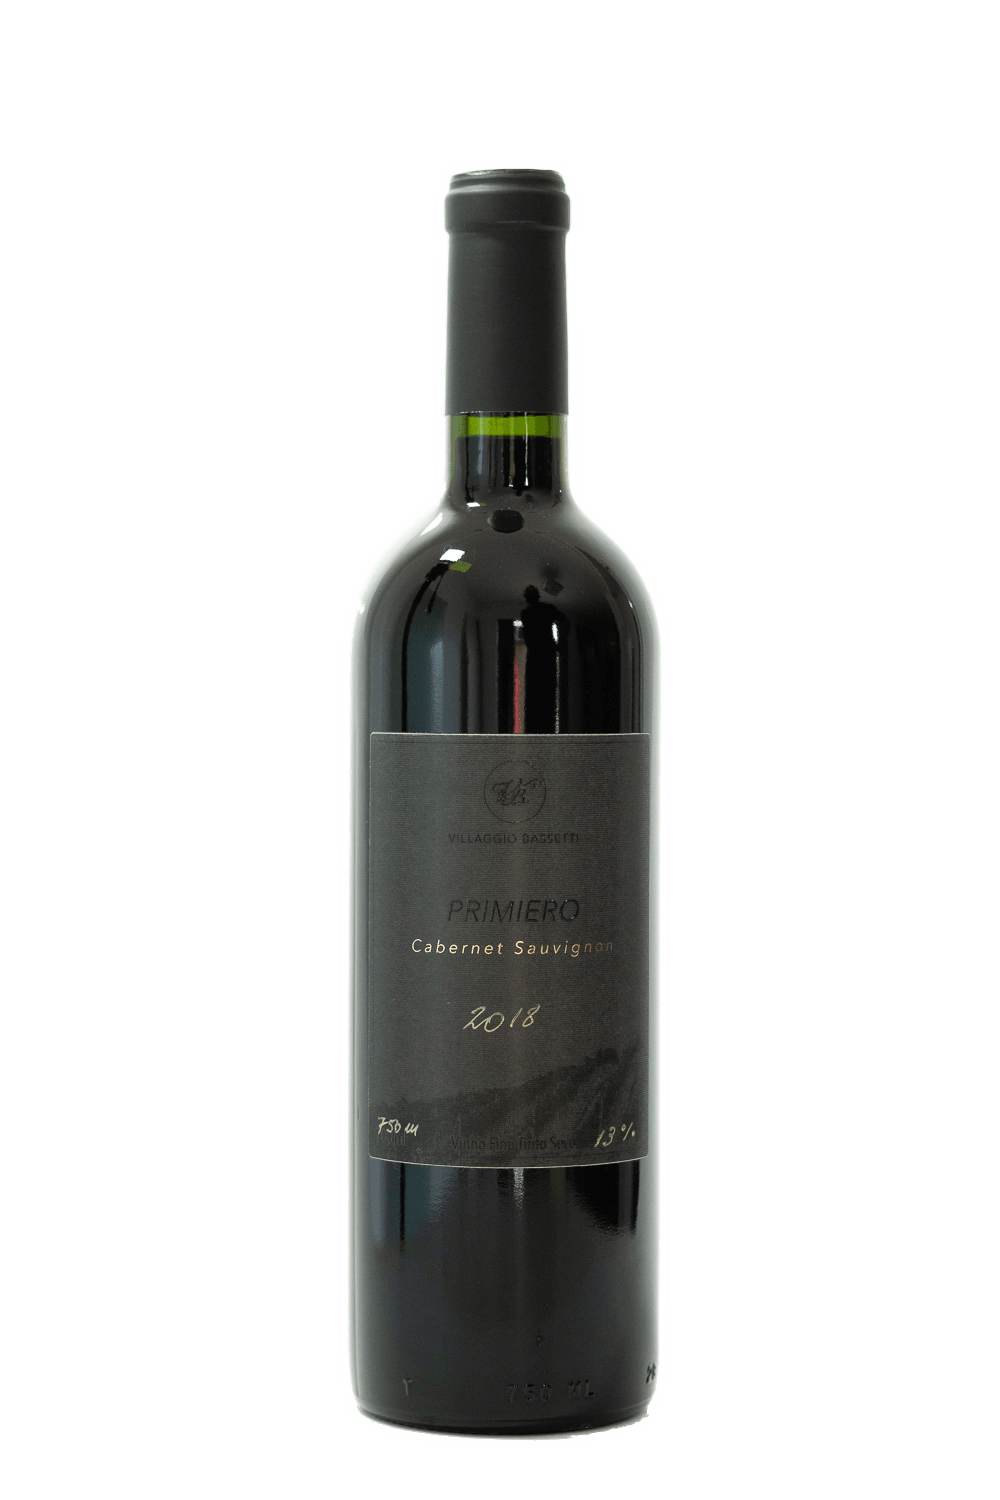 Villaggio Bassetti - Primiero - Cabernet Sauvignon 2018 - The Blend Wines